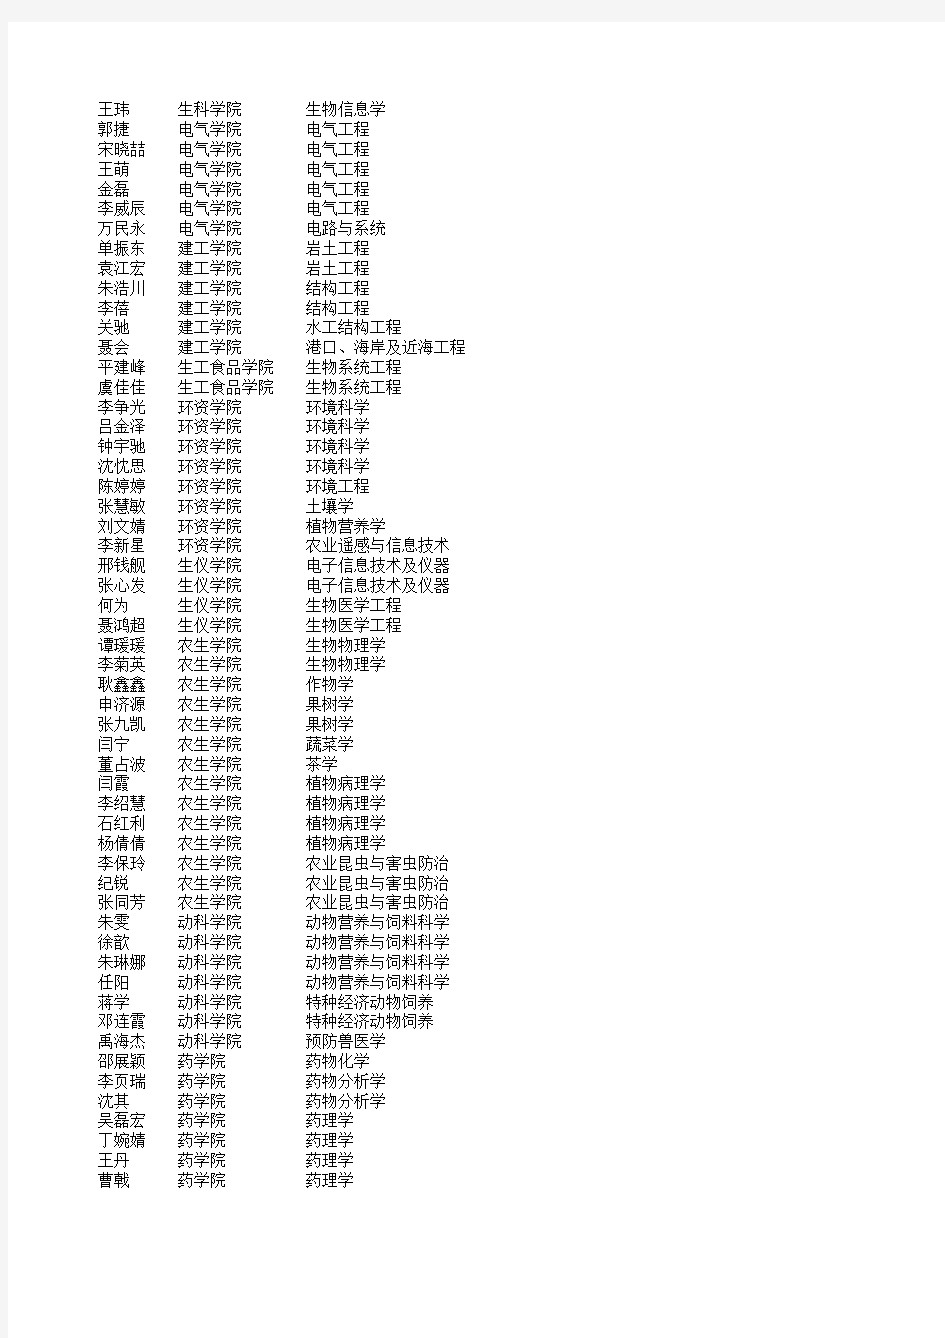 浙江大学2010年春季拟录取博士生名单